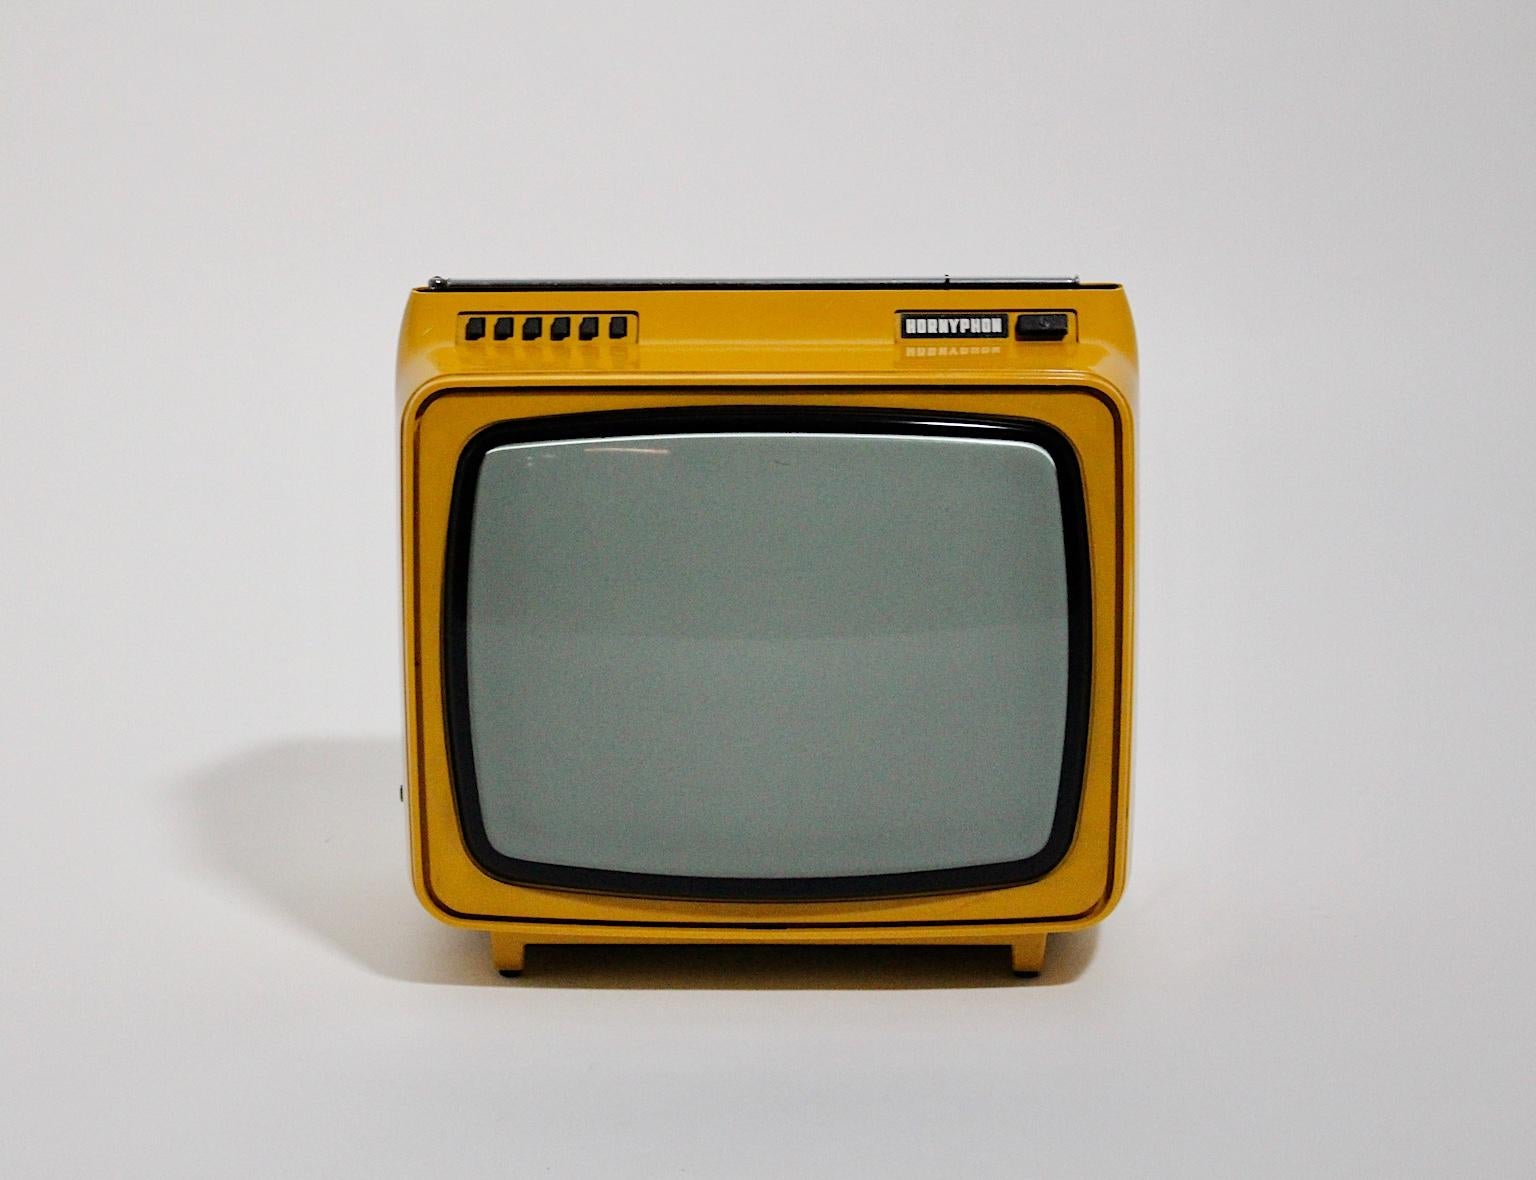 Weltraumzeitalter gelber Vintage-Fernseher aus Kunststoff, der tragbar ist. Das Gehäuse des Fernsehers wurde aus gelbem Kunststoff gefertigt und ist in sehr gutem Zustand, aber ohne Garantie für die Funktion.
Ungefähre Maße:
Breite 34 cm
Tiefe 26